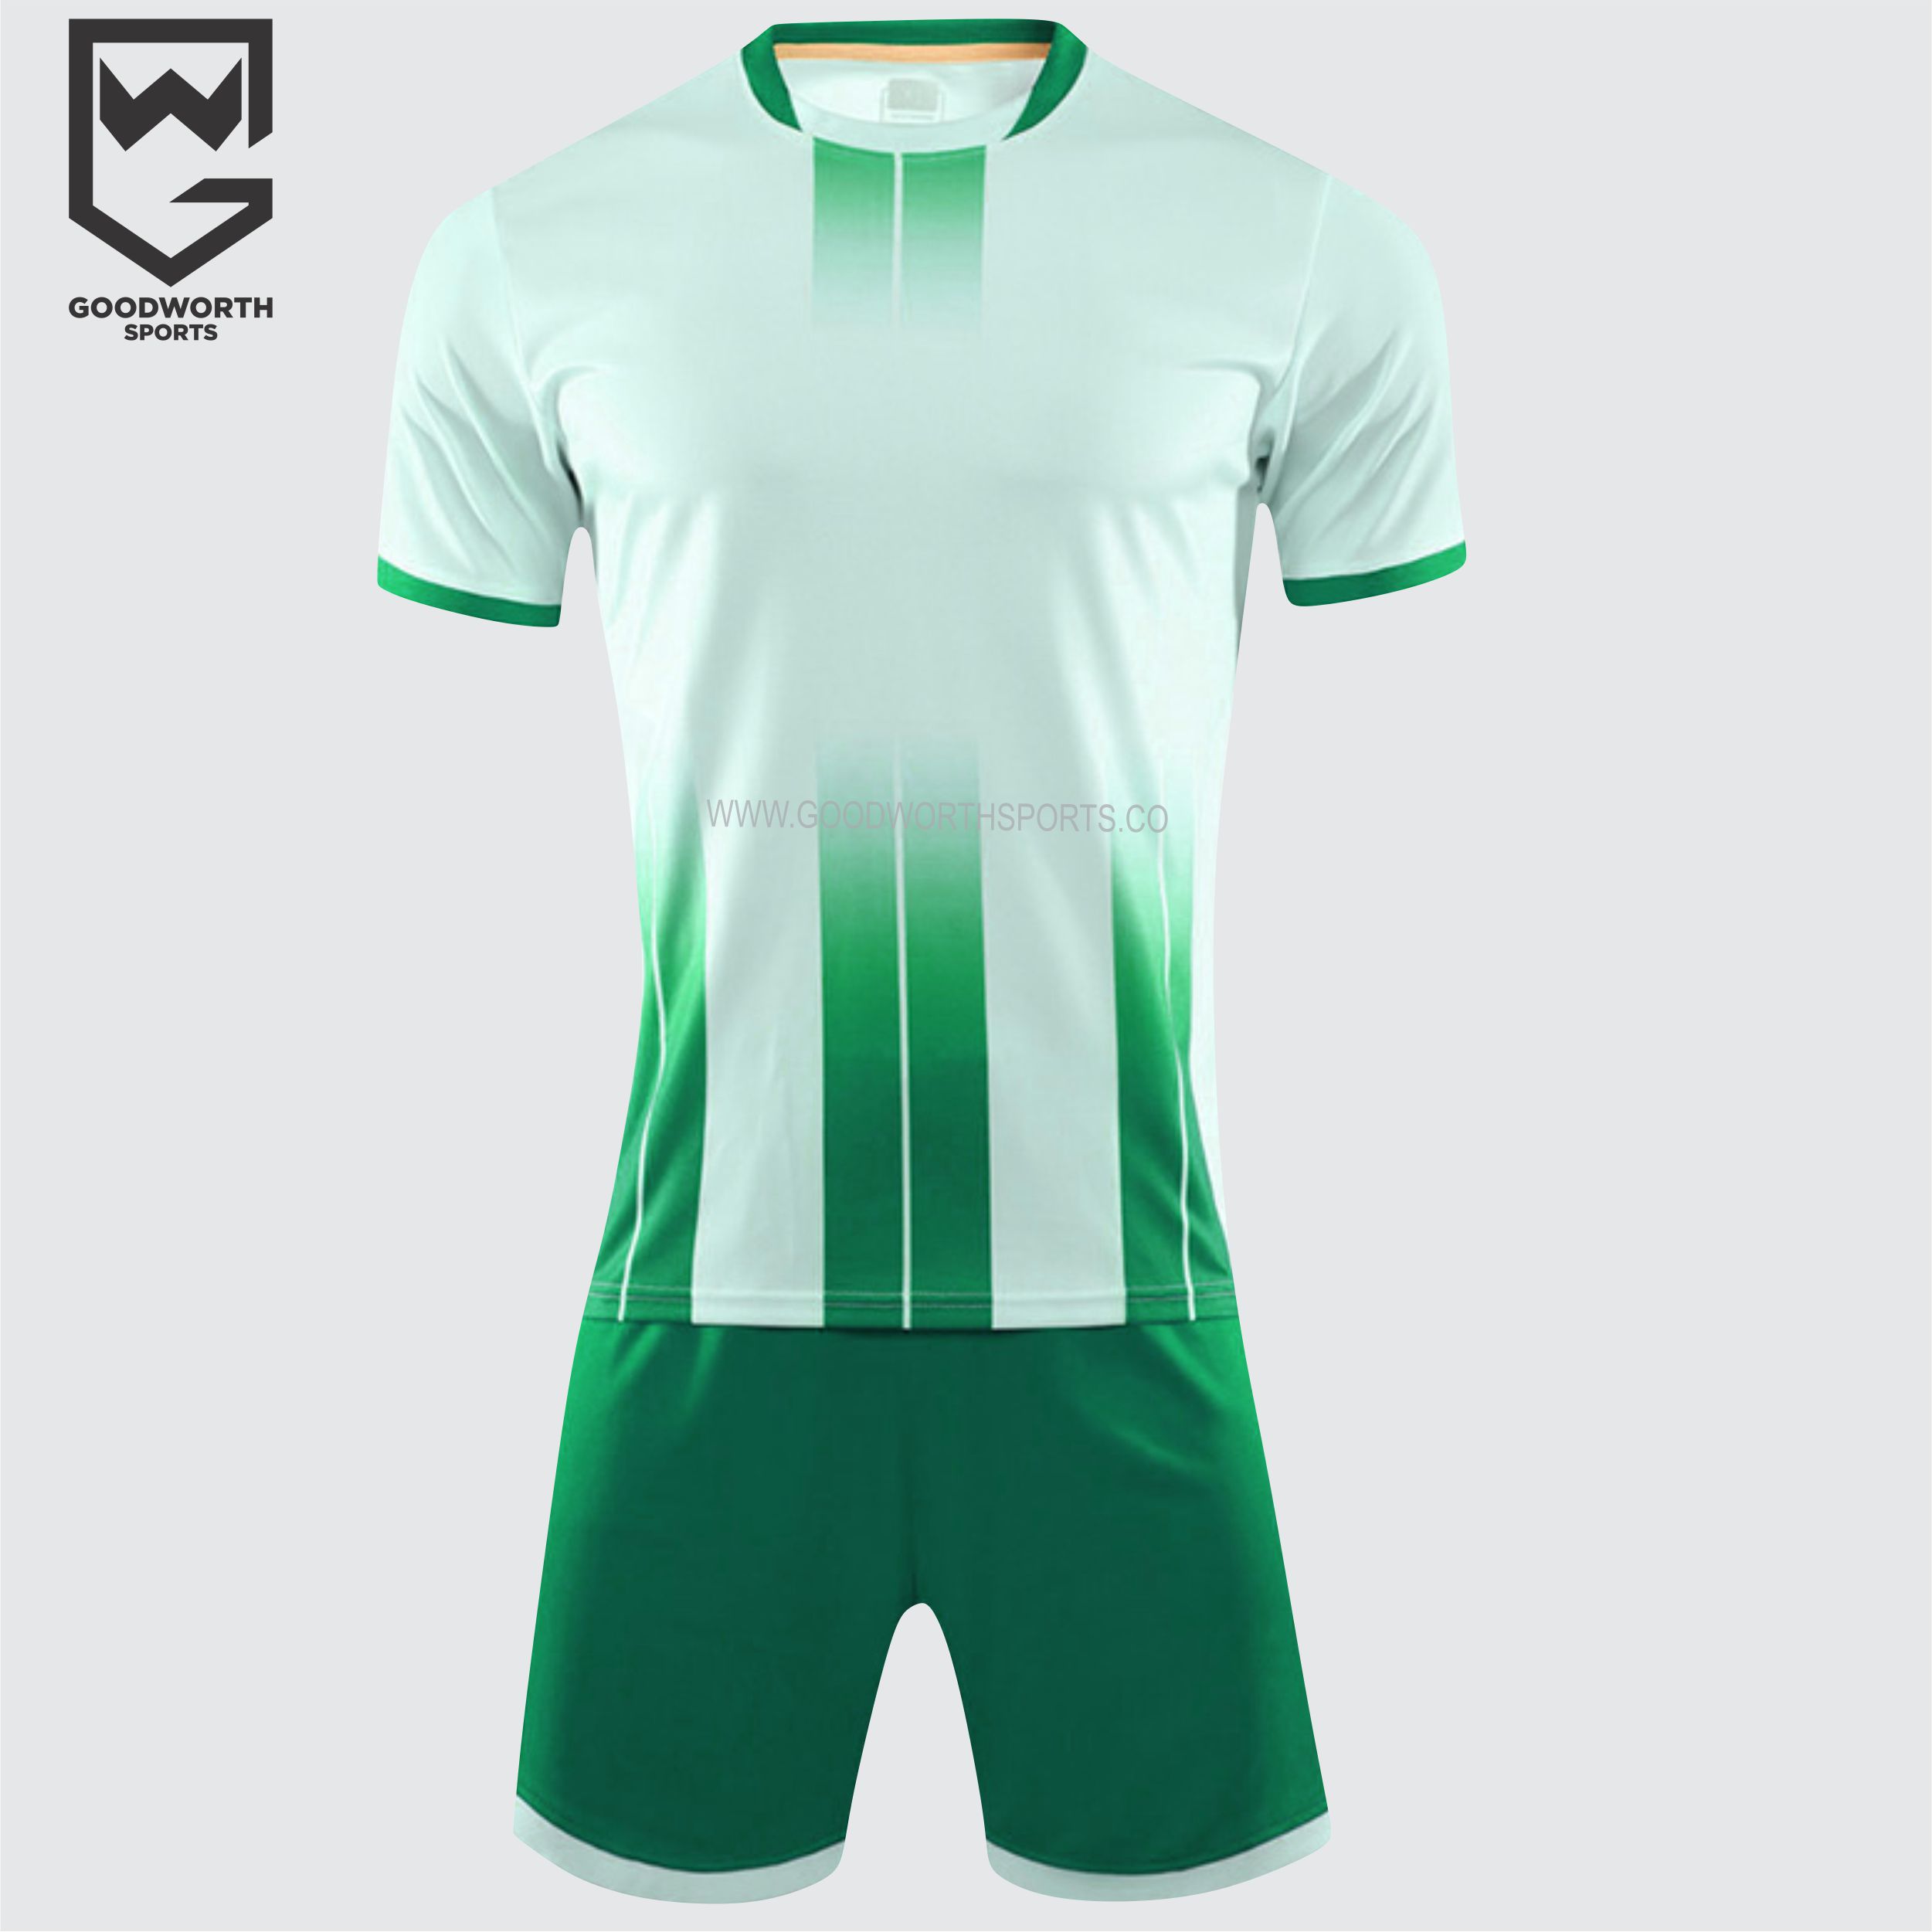 Wholesale Sports Jerseys & Uniforms Manufacturer - Gym Clothes